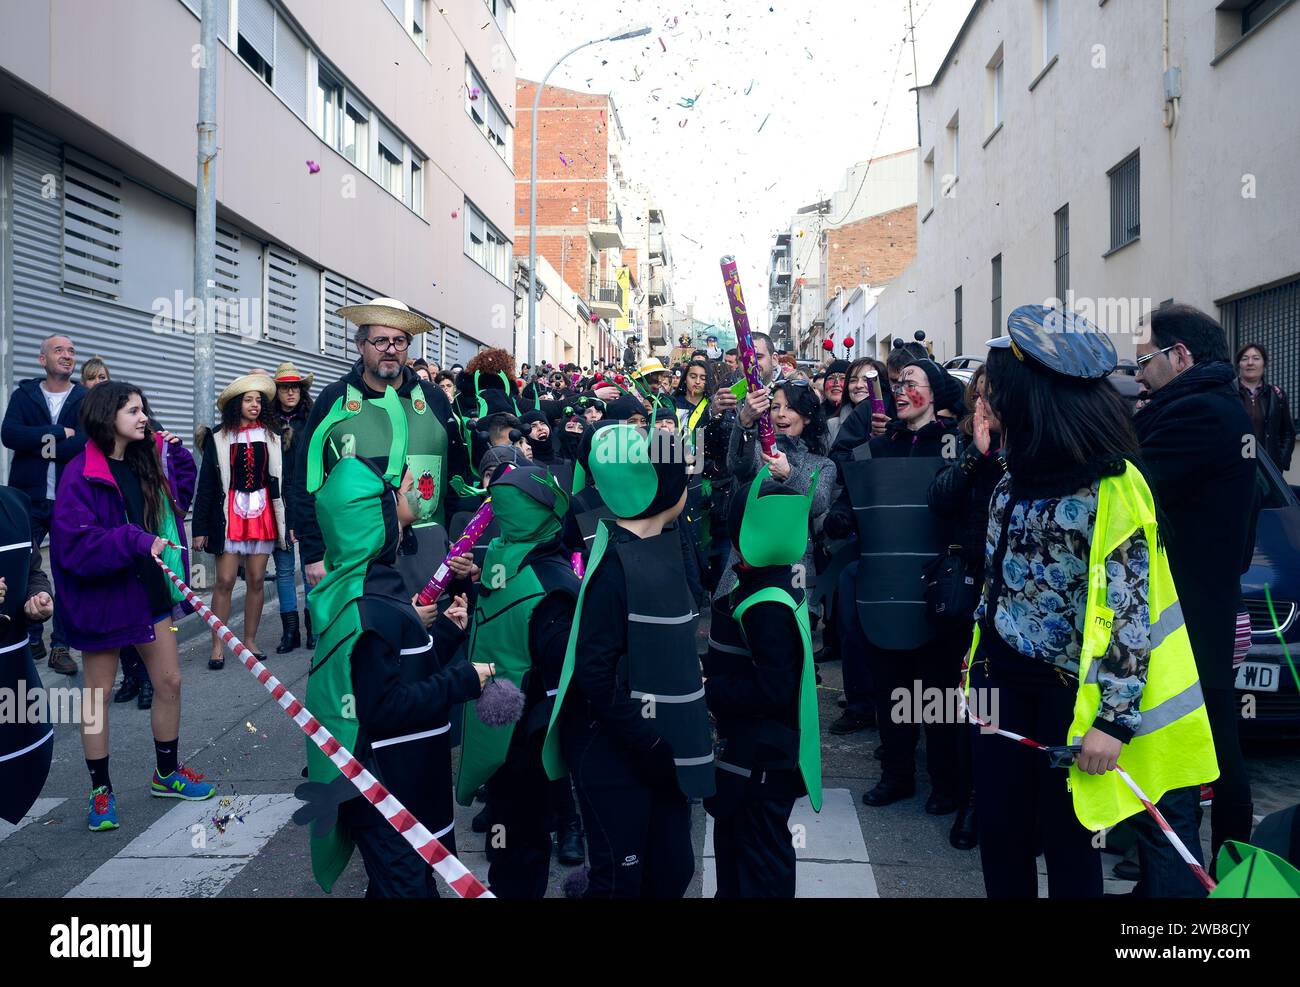 Barcelone, Espagne, le 13 février 2015 - le carnaval scolaire animé remplit les rues de Barcelone de parents et d'enfants en costumes, au rythme de la musique Banque D'Images